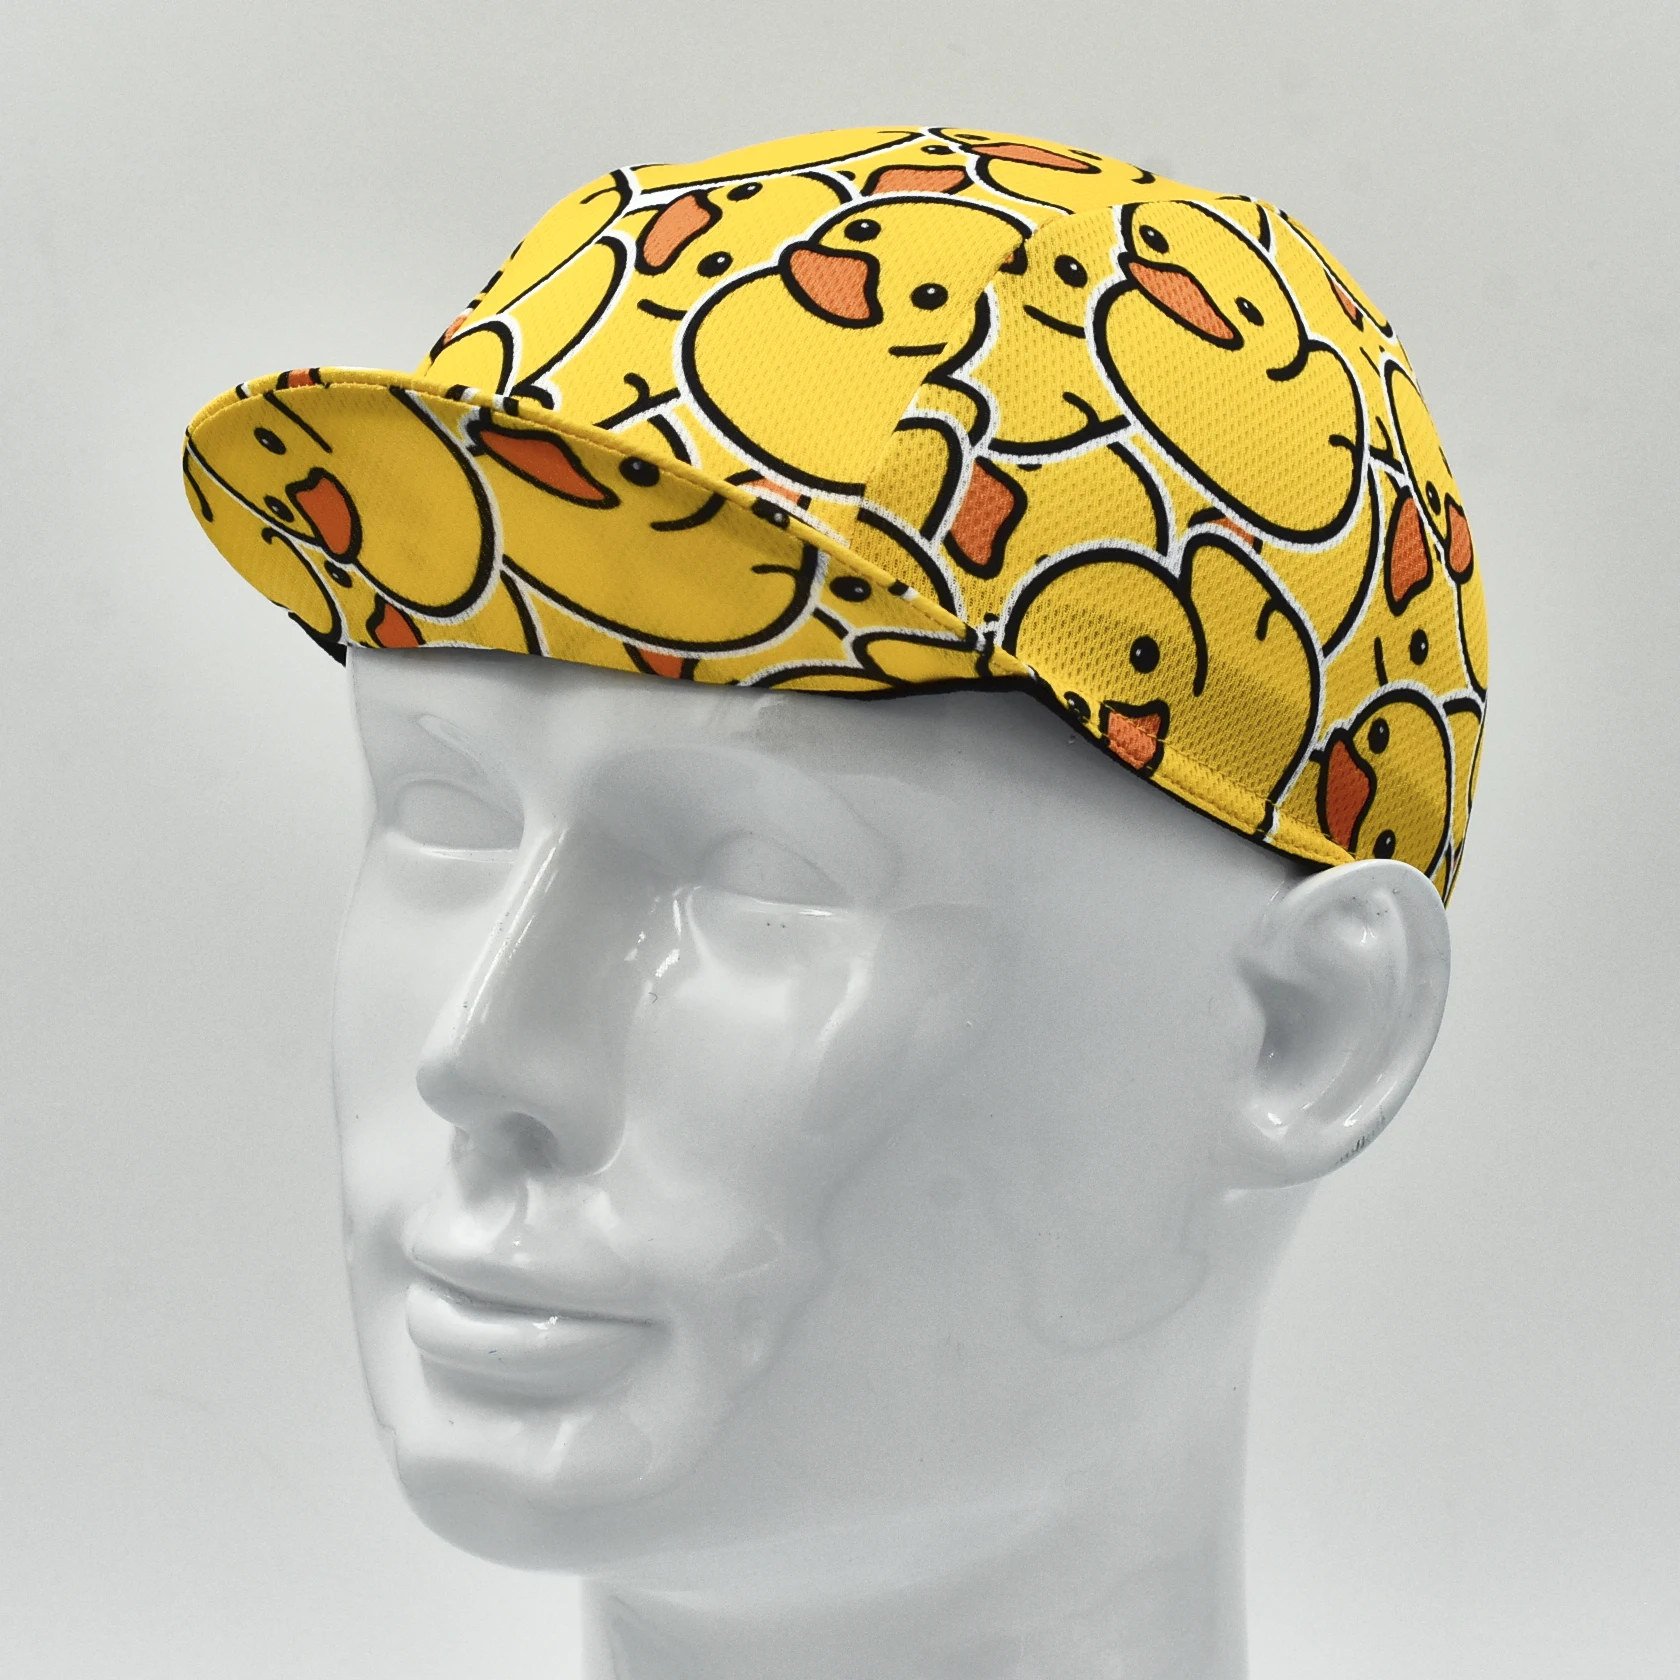 Велосипедная кепка Little Yellow Duck, цветная велосипедная кепка, кепка для бега, спортивная кепка на открытом воздухе Изображение 1